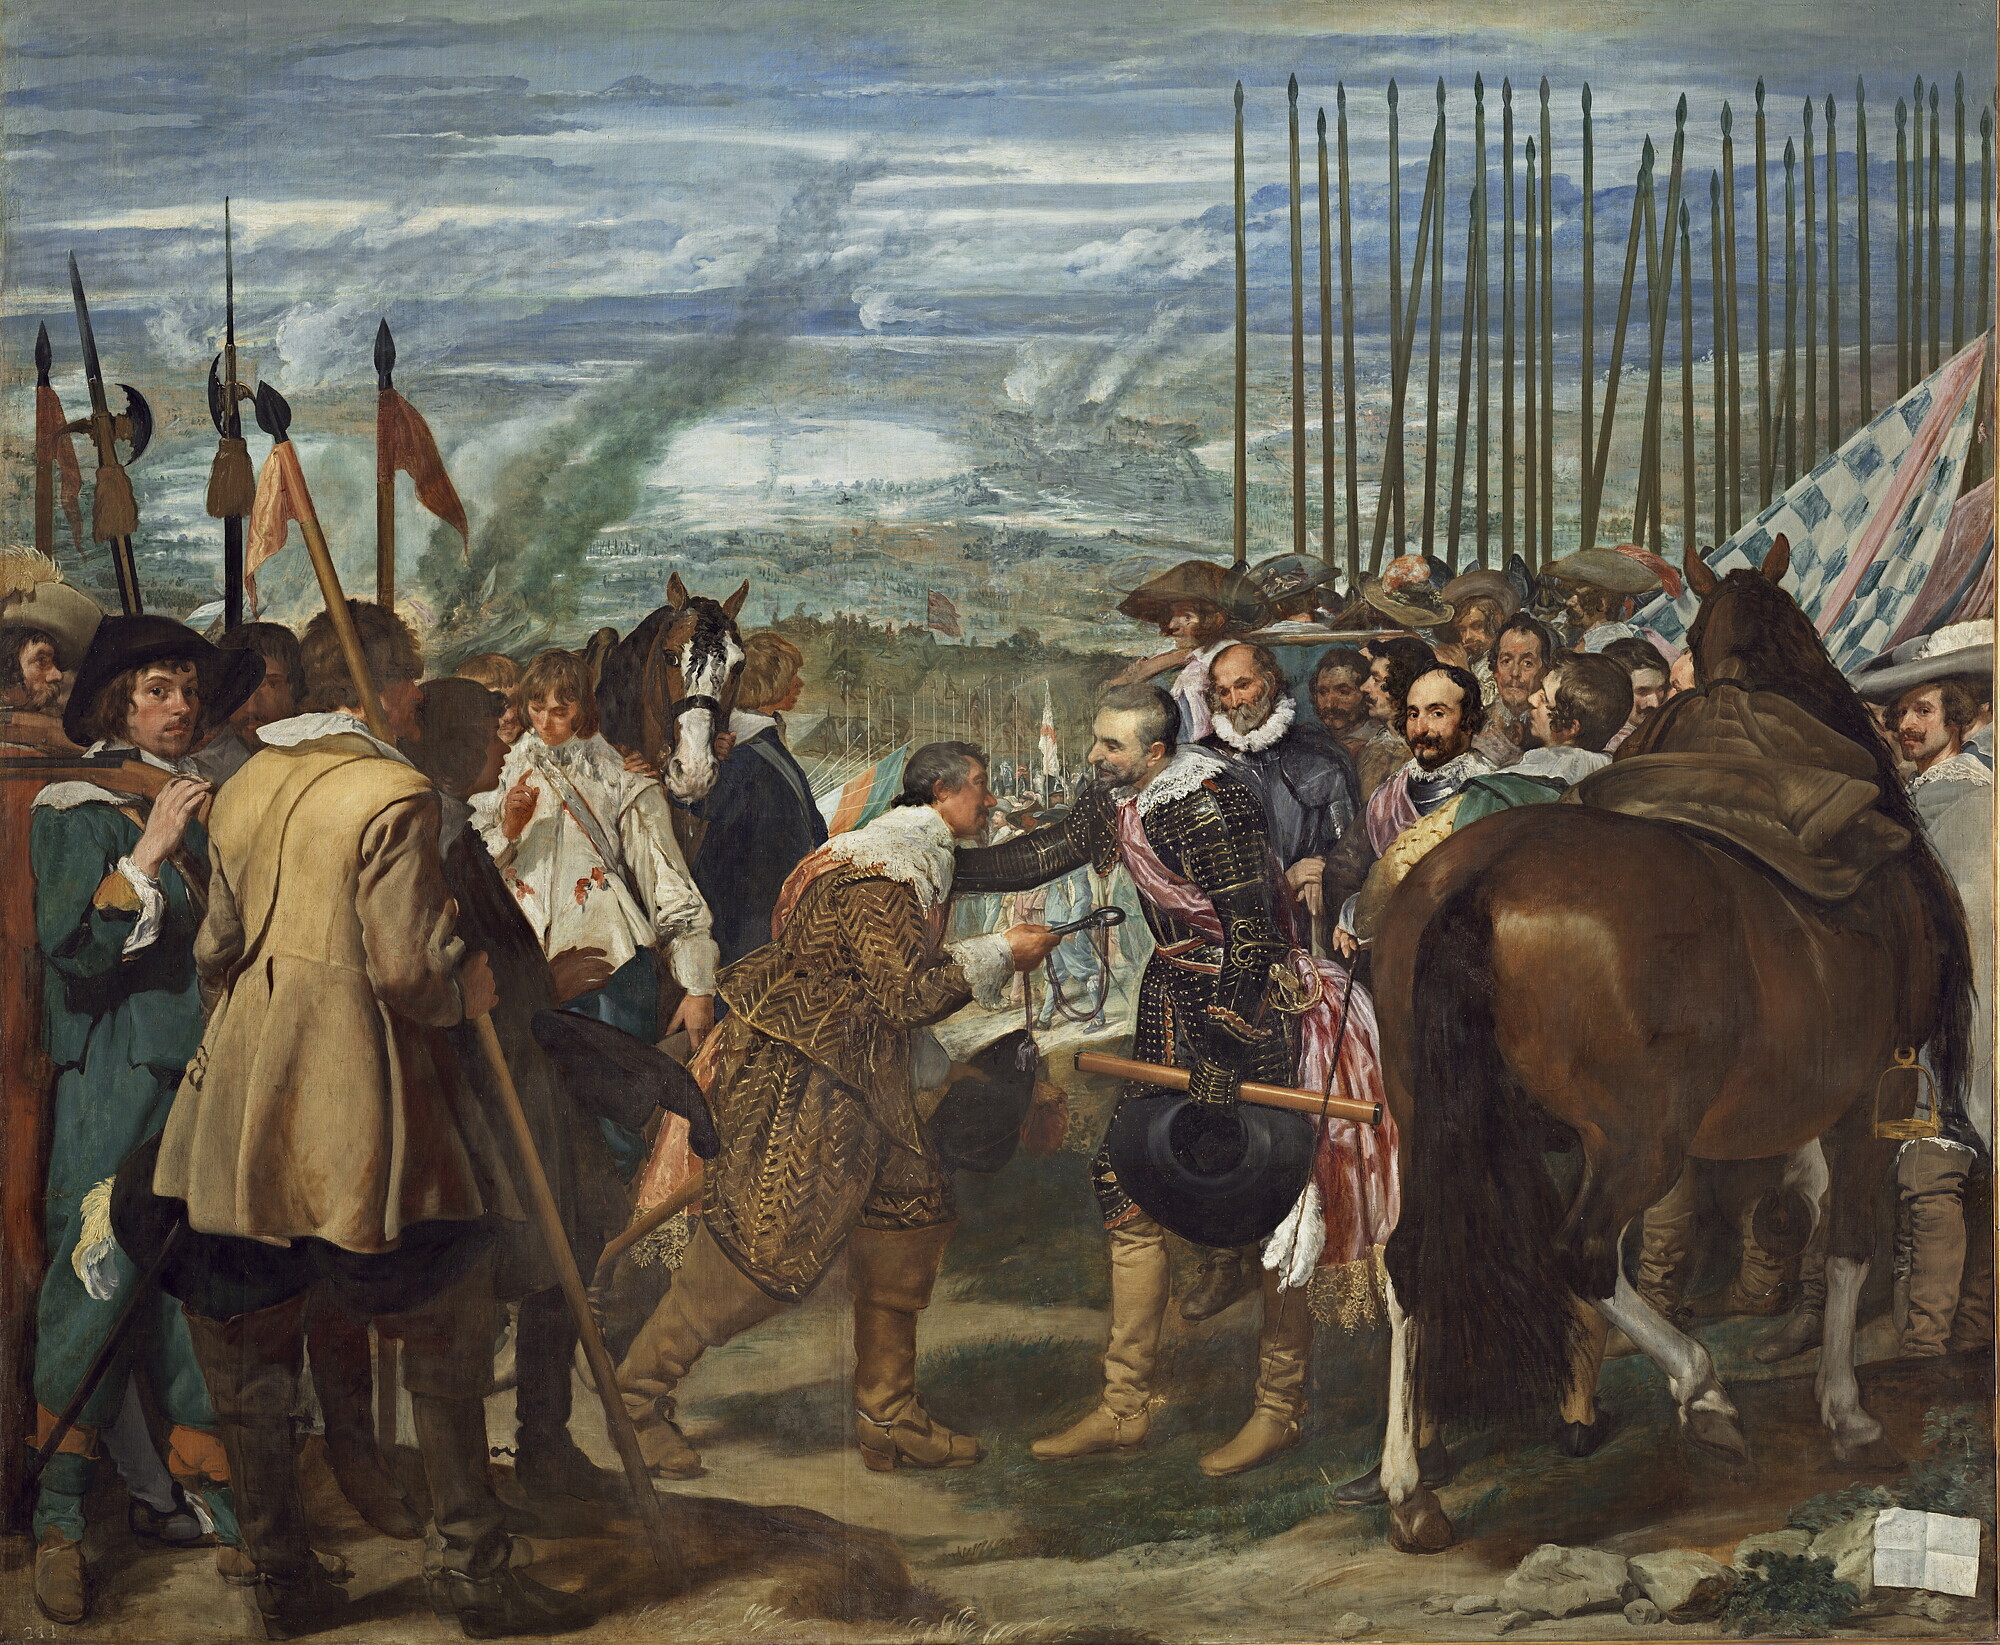 Bilbaophotocadeau. - velazquez-de-breda-o-las-lanzas-museo-del-prado-1634-35.jpg